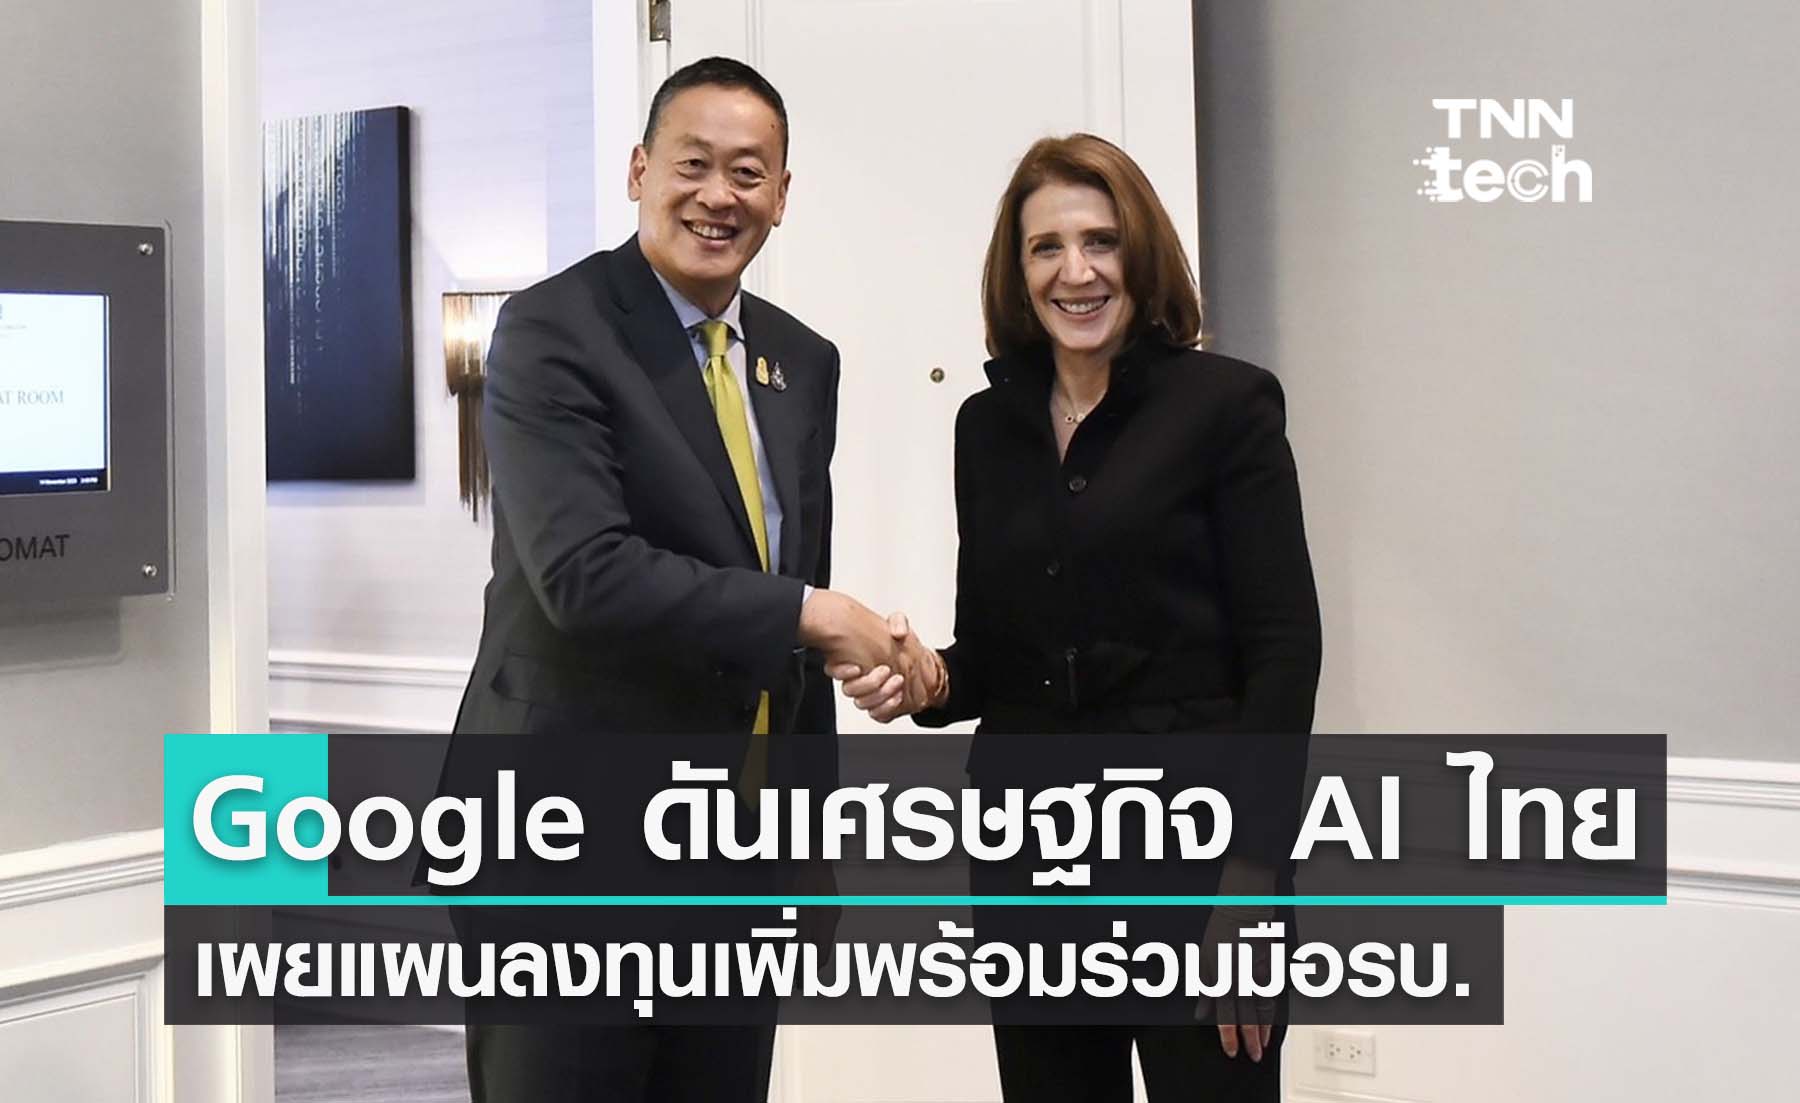 เศรษฐา จับมือ Google ประกาศแผนลงทุนโครงสร้างพื้นฐานในไทยเพิ่ม พร้อมดันโครงการสนับสนุนเศรษฐกิจ “AI” ในงาน APEC